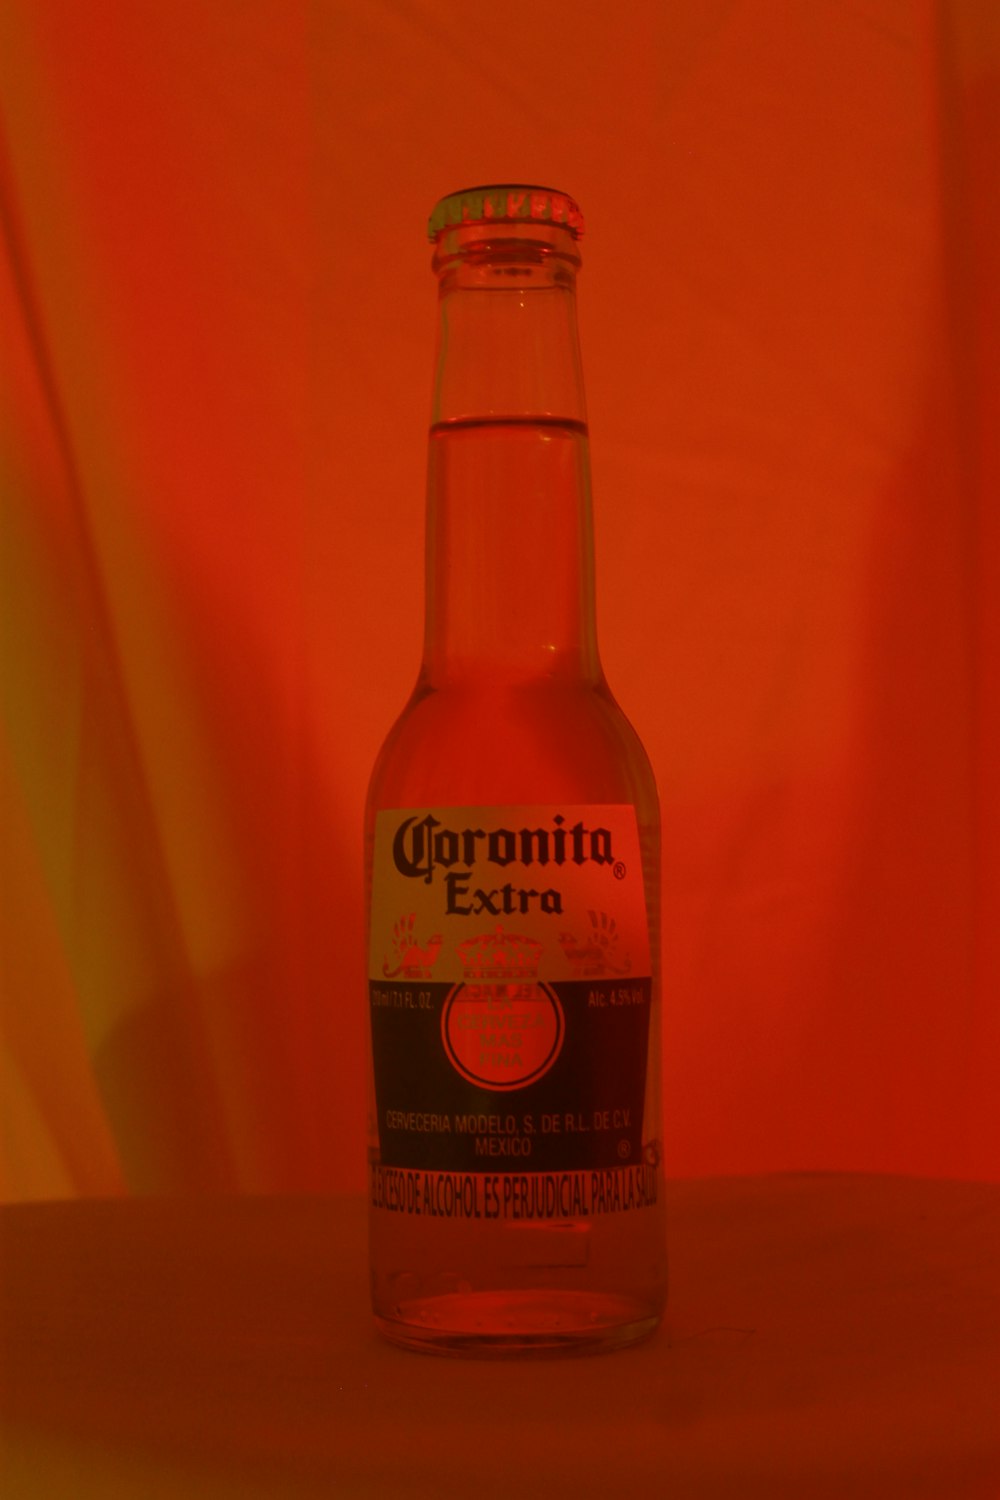 Botella con etiqueta naranja y blanca